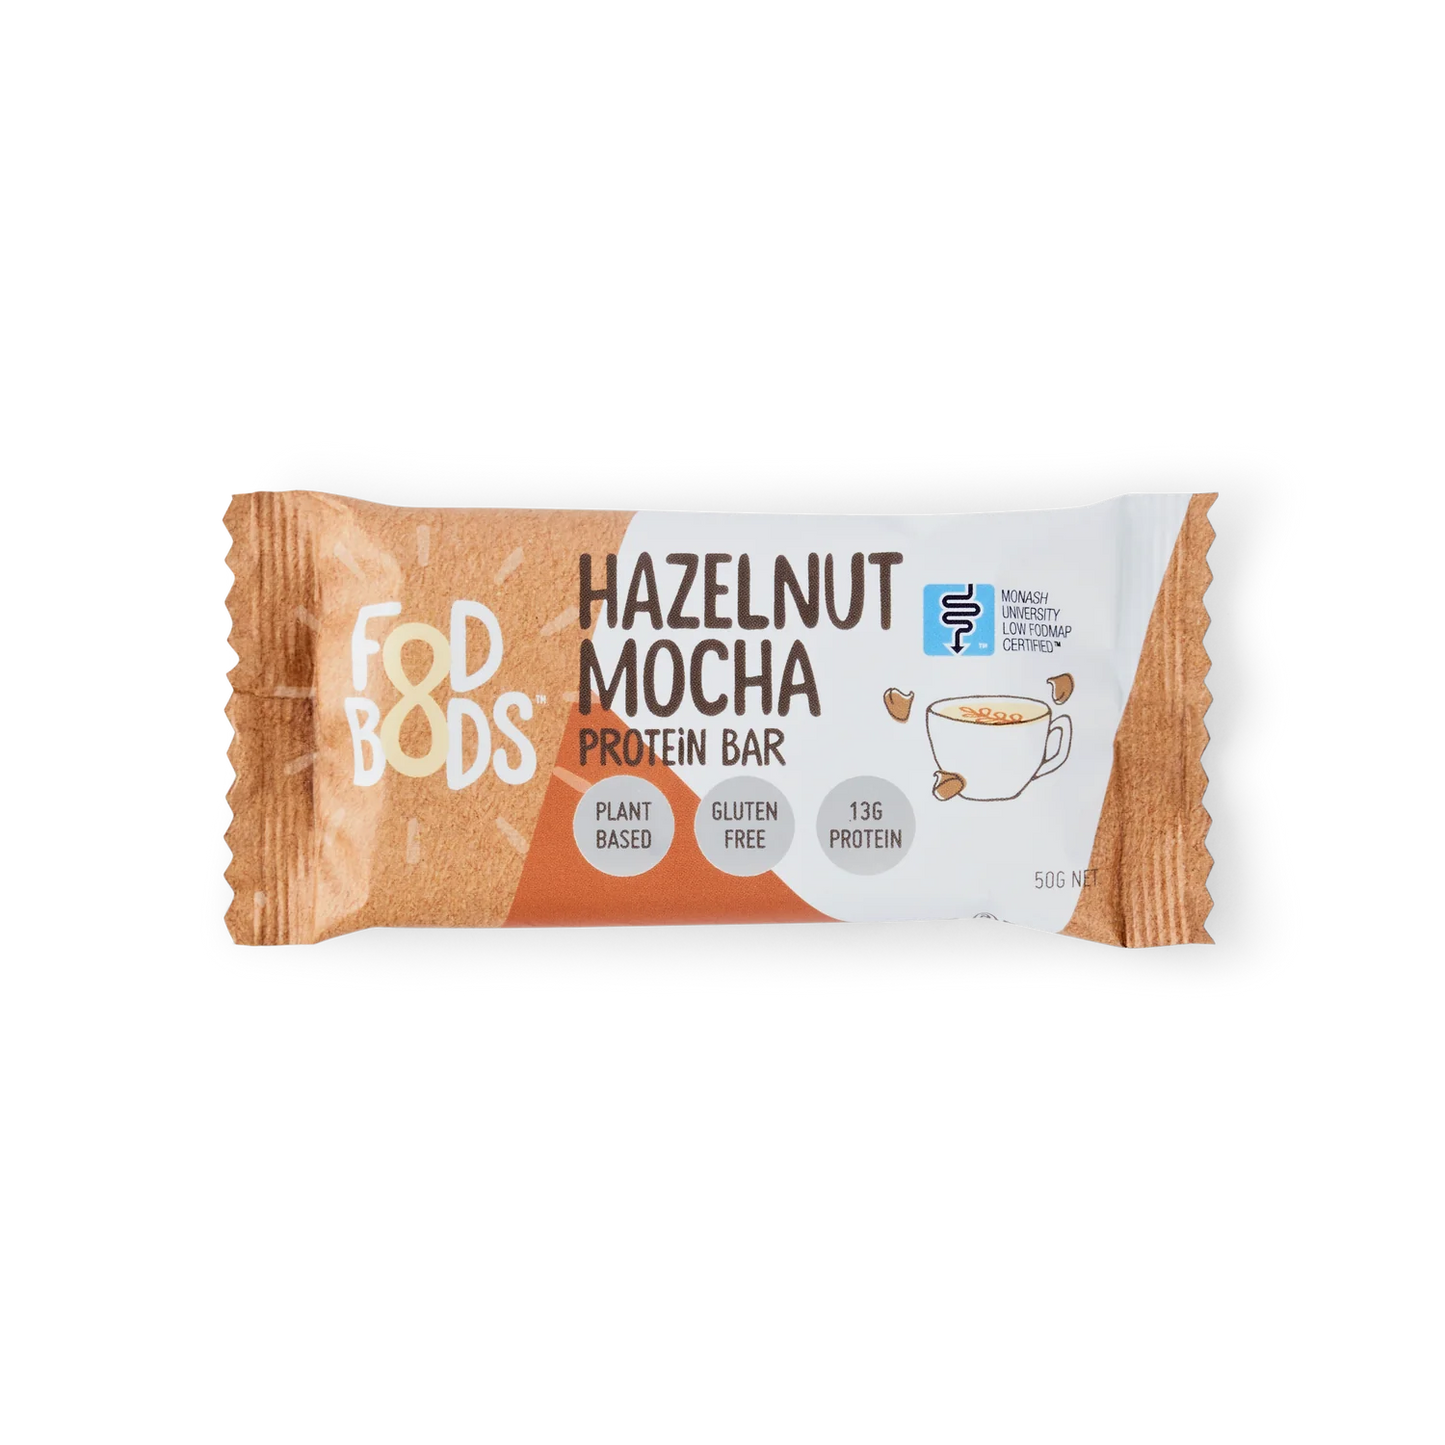 Fodbods - Hazelnut Mocha Protein Bar